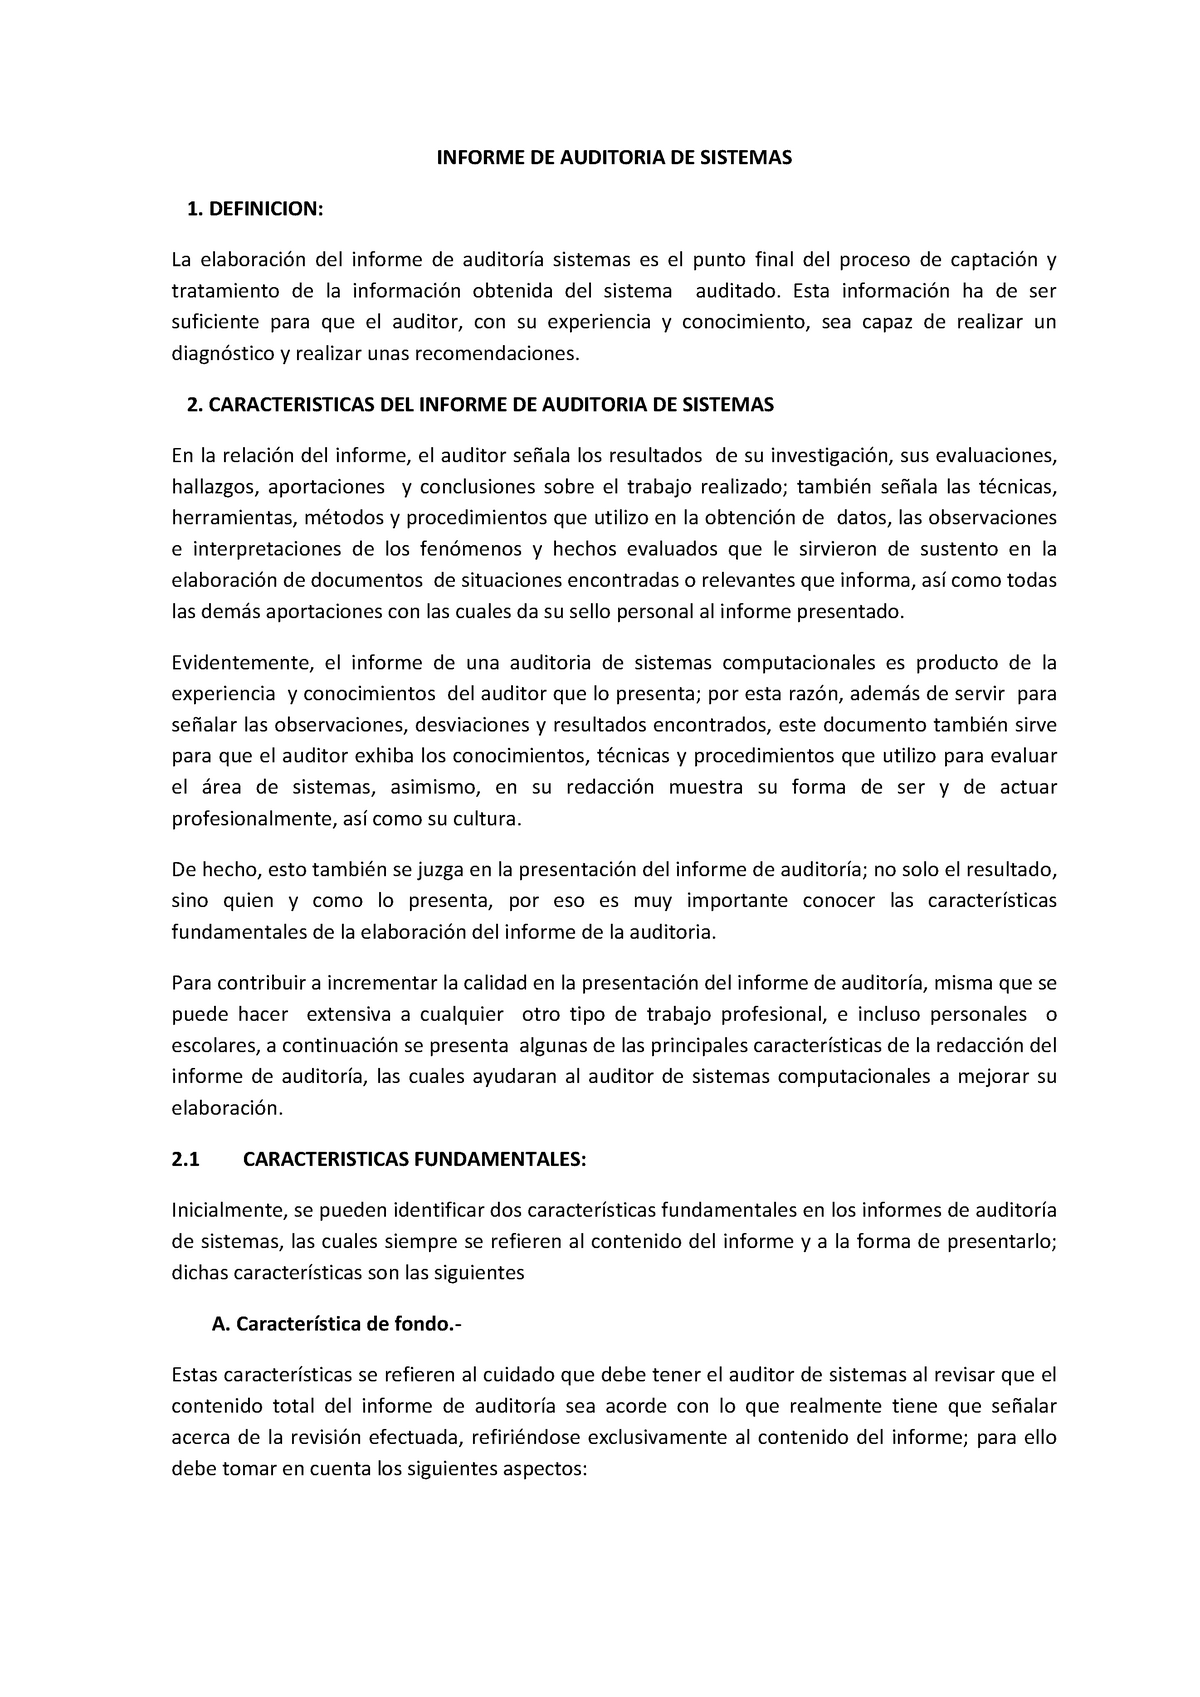 Informe De Auditoria De Sistemas Business English 30103073 Studocu